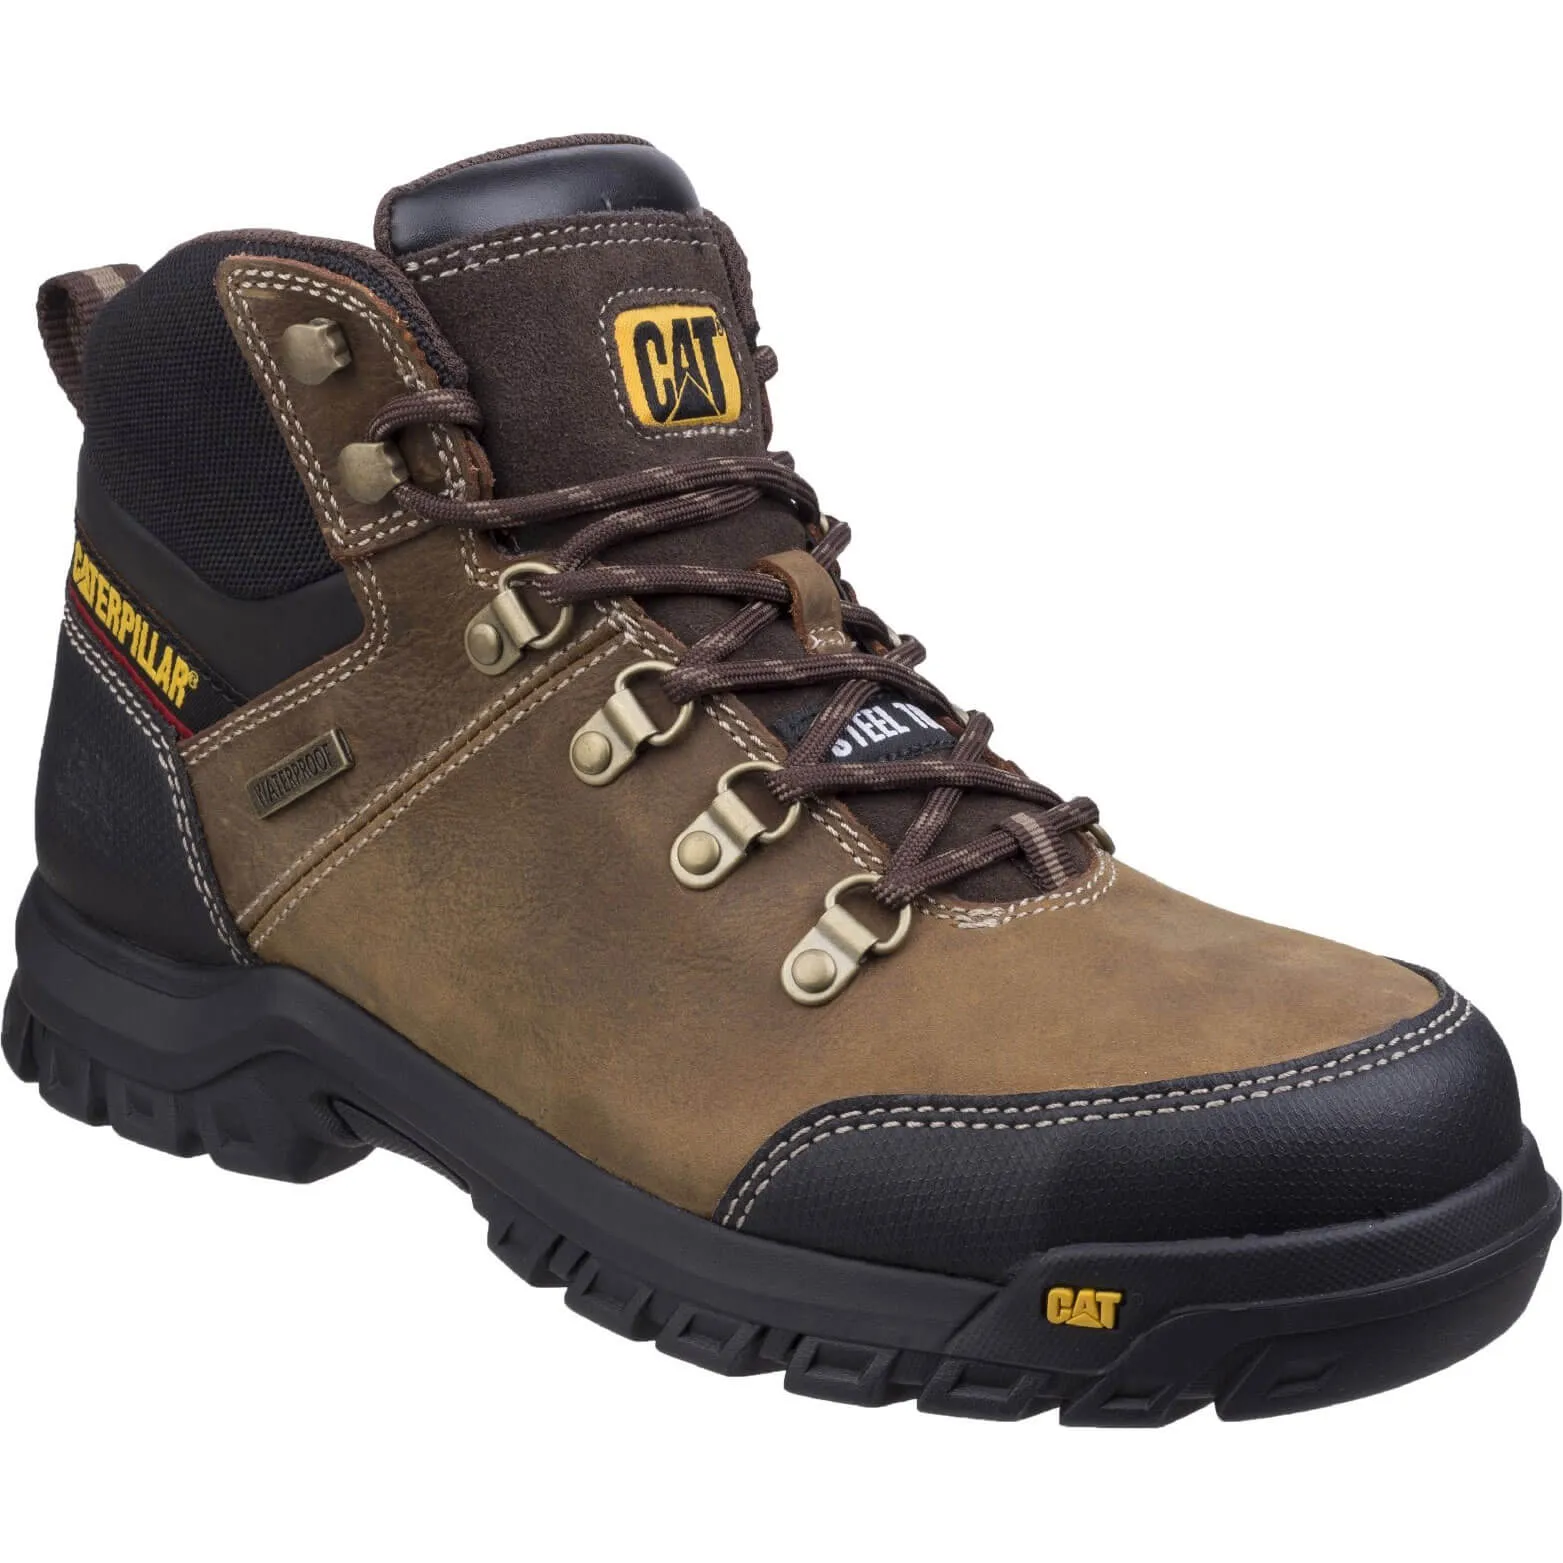 Caterpillar Mens Framework Safety Boots - Brown, Size 11